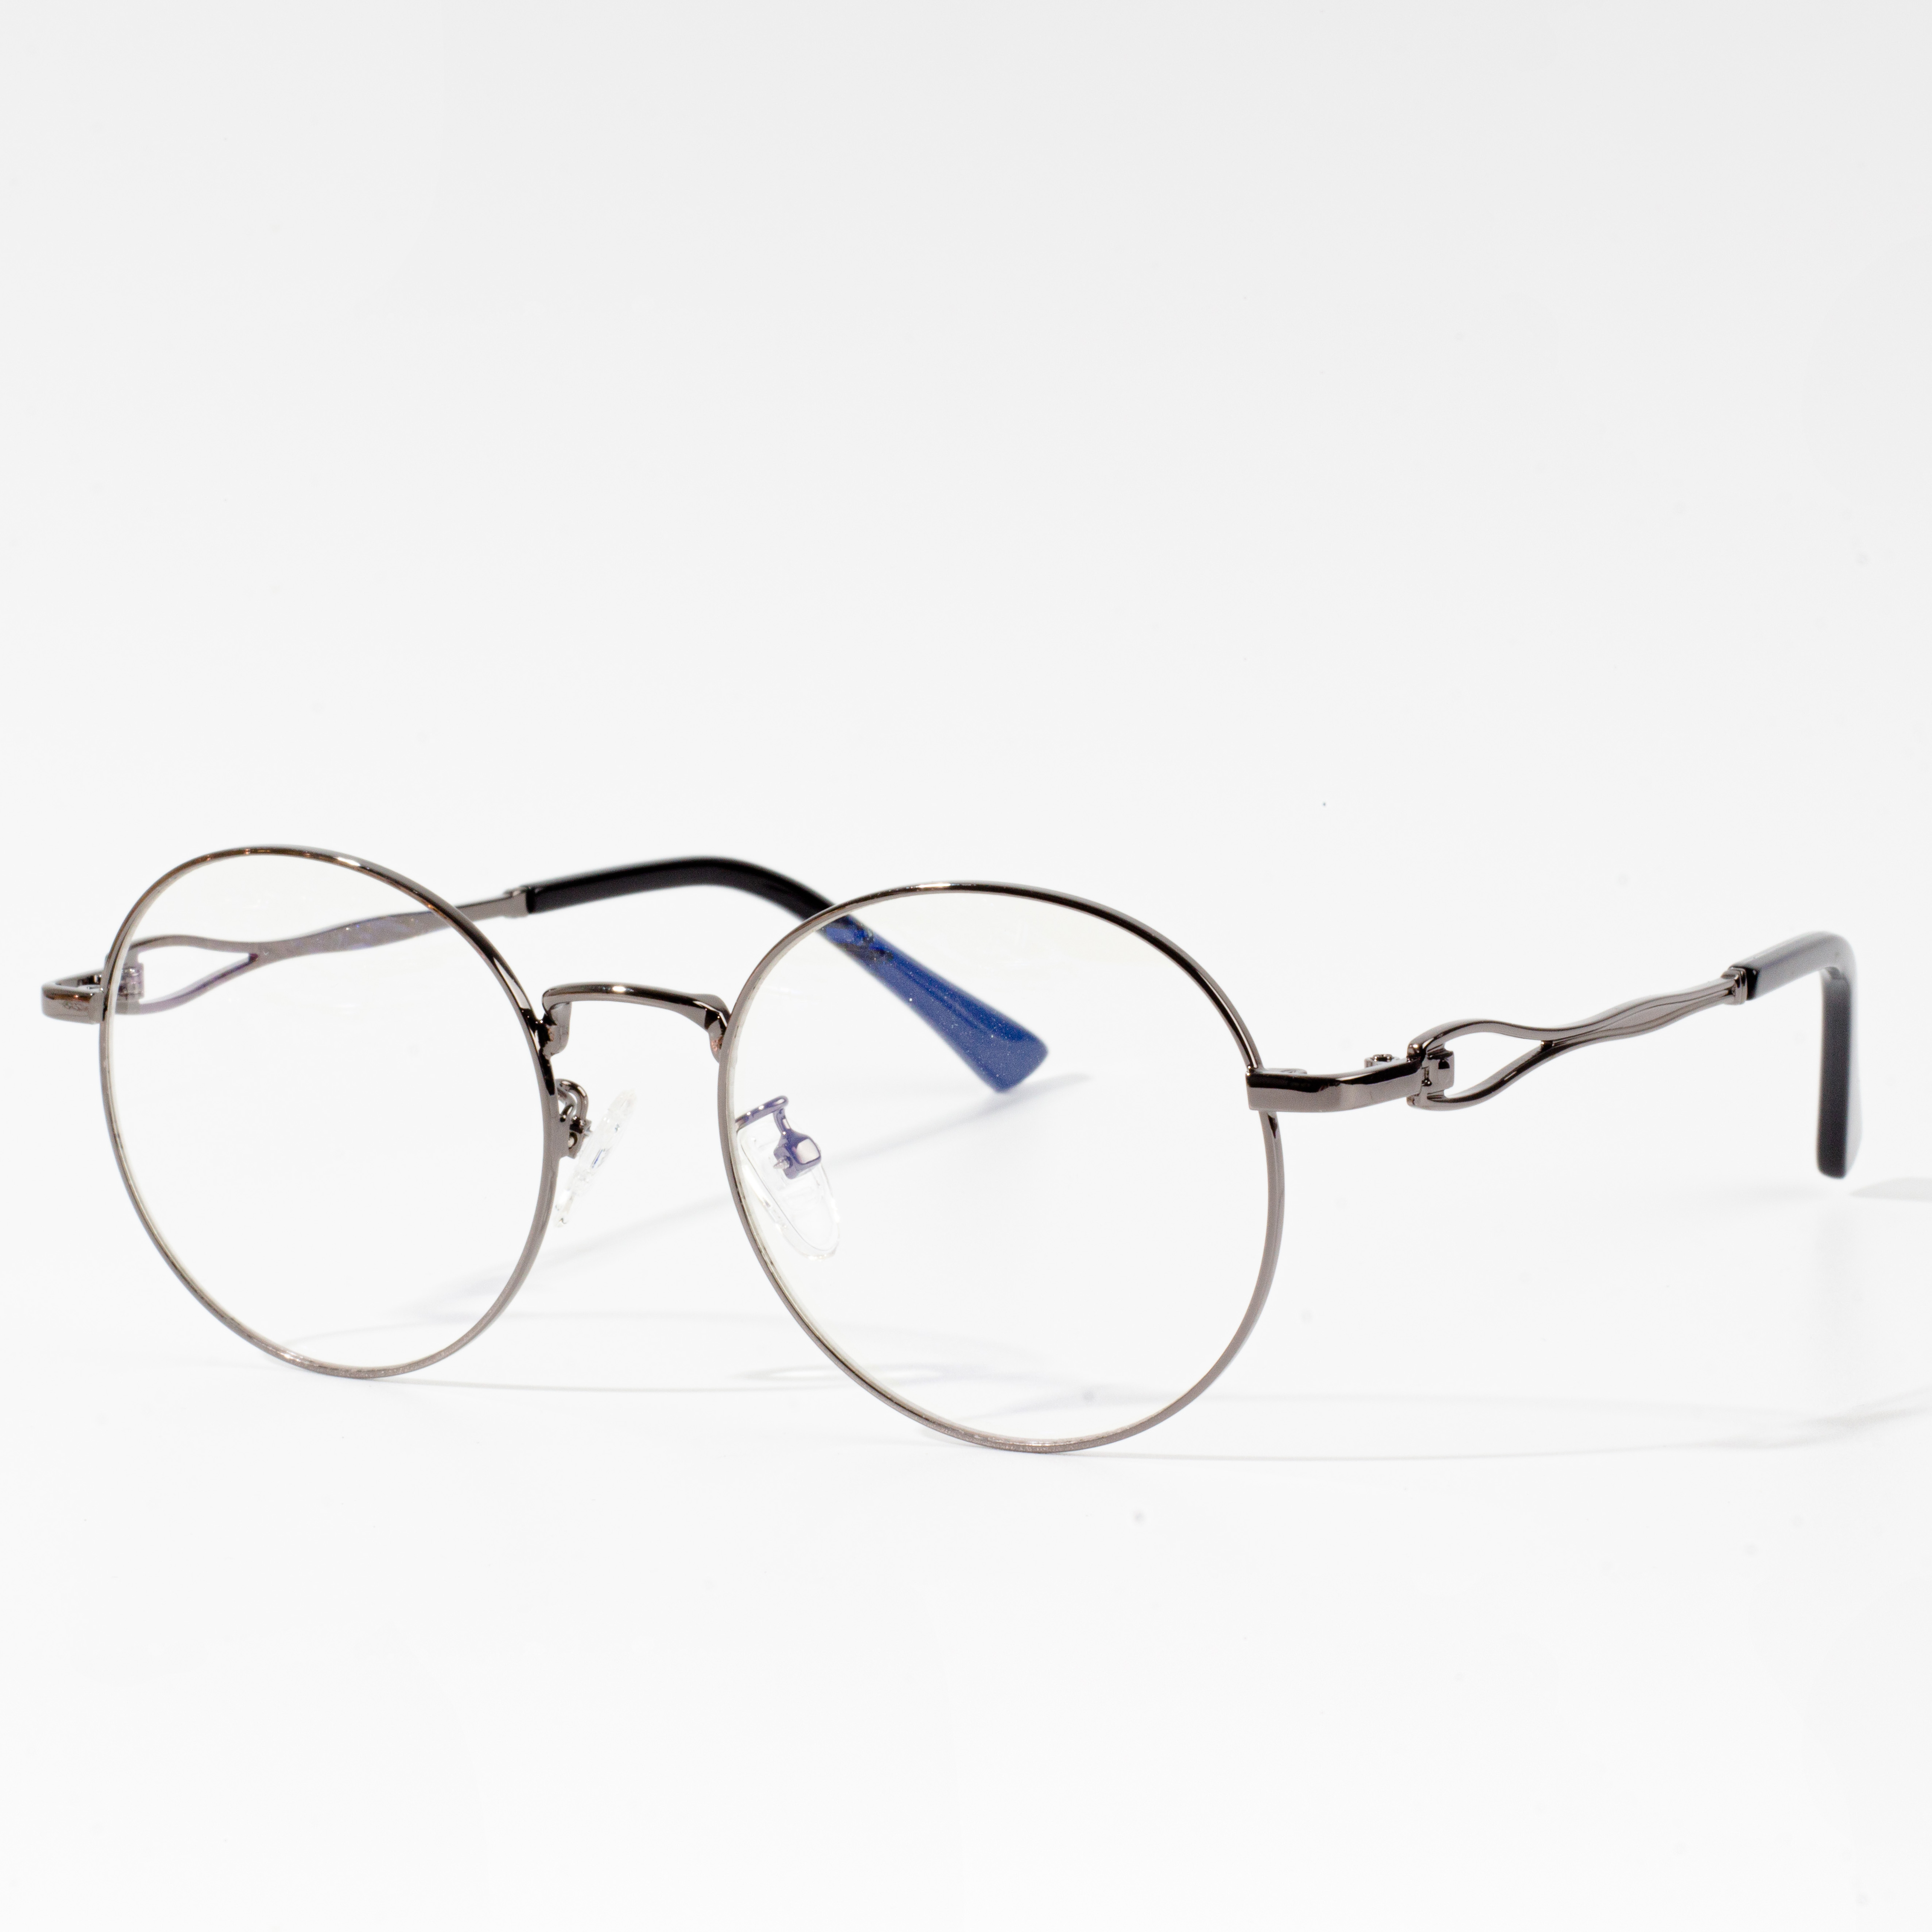 korniza të njohura të syzeve